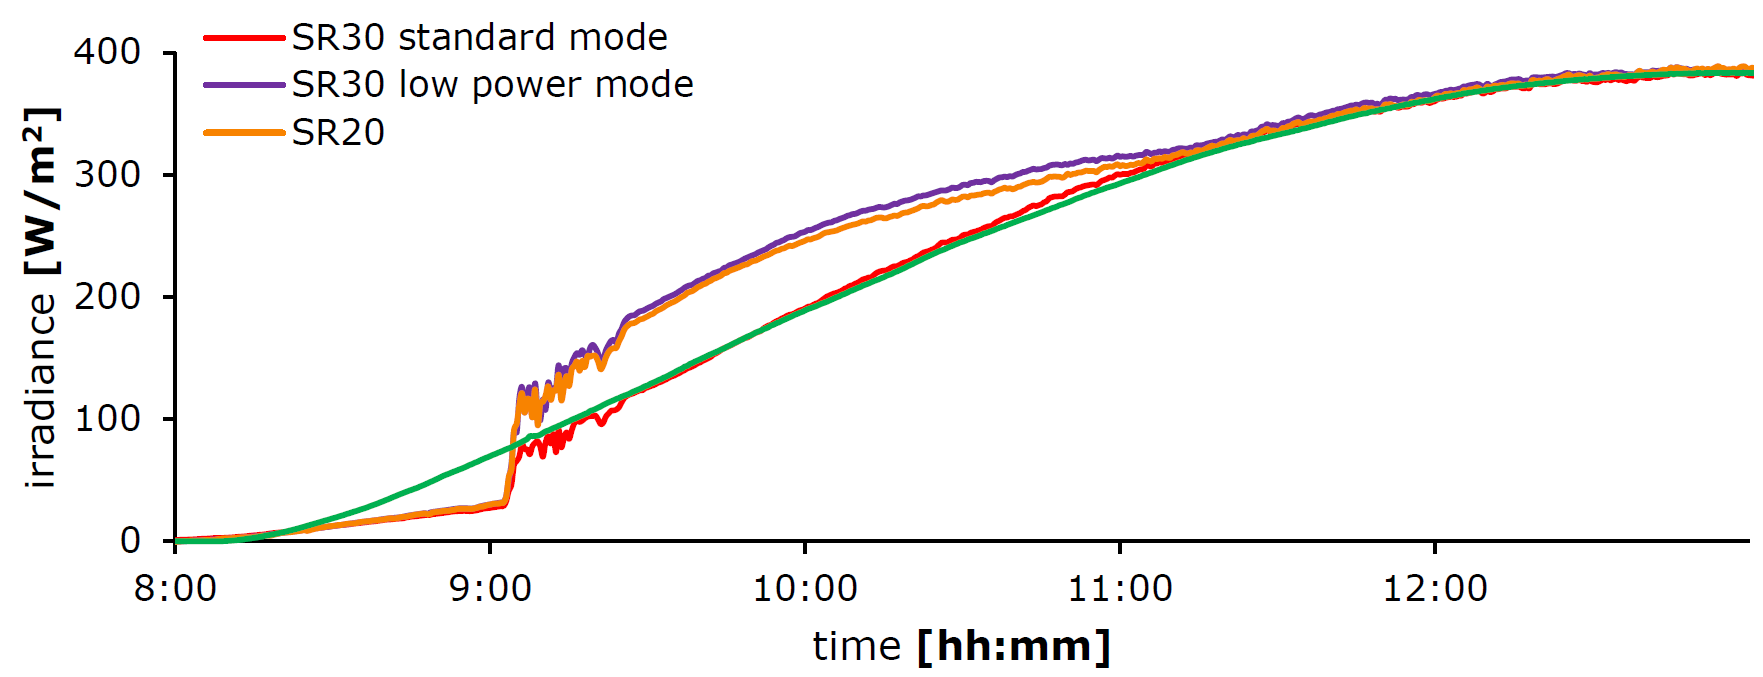 在低功率模式下SR30和SR20上有霜的影响示例，在标准操作模式下SR30没有任何霜的迹象。